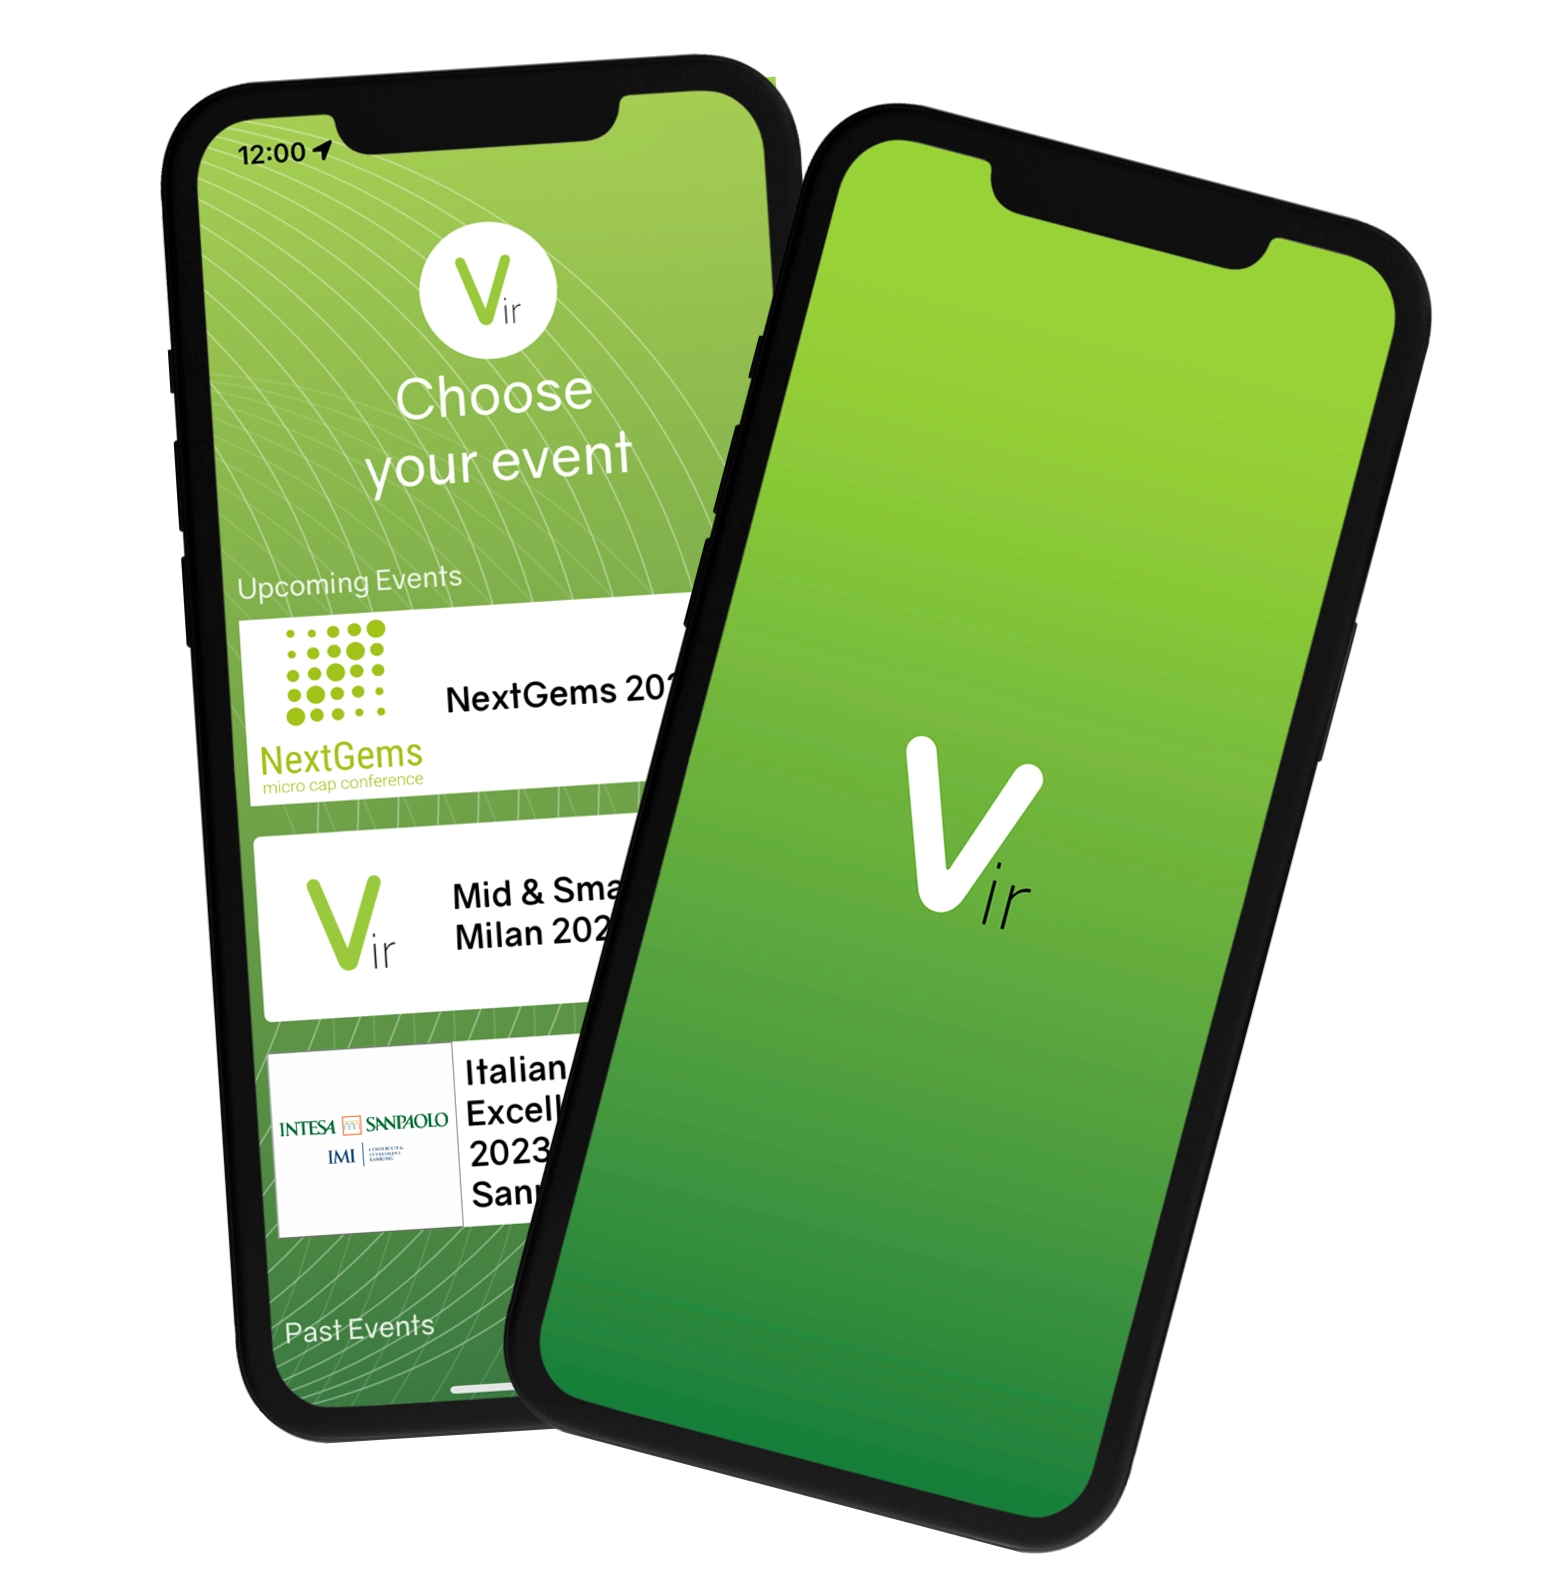 Example screens of Vir App